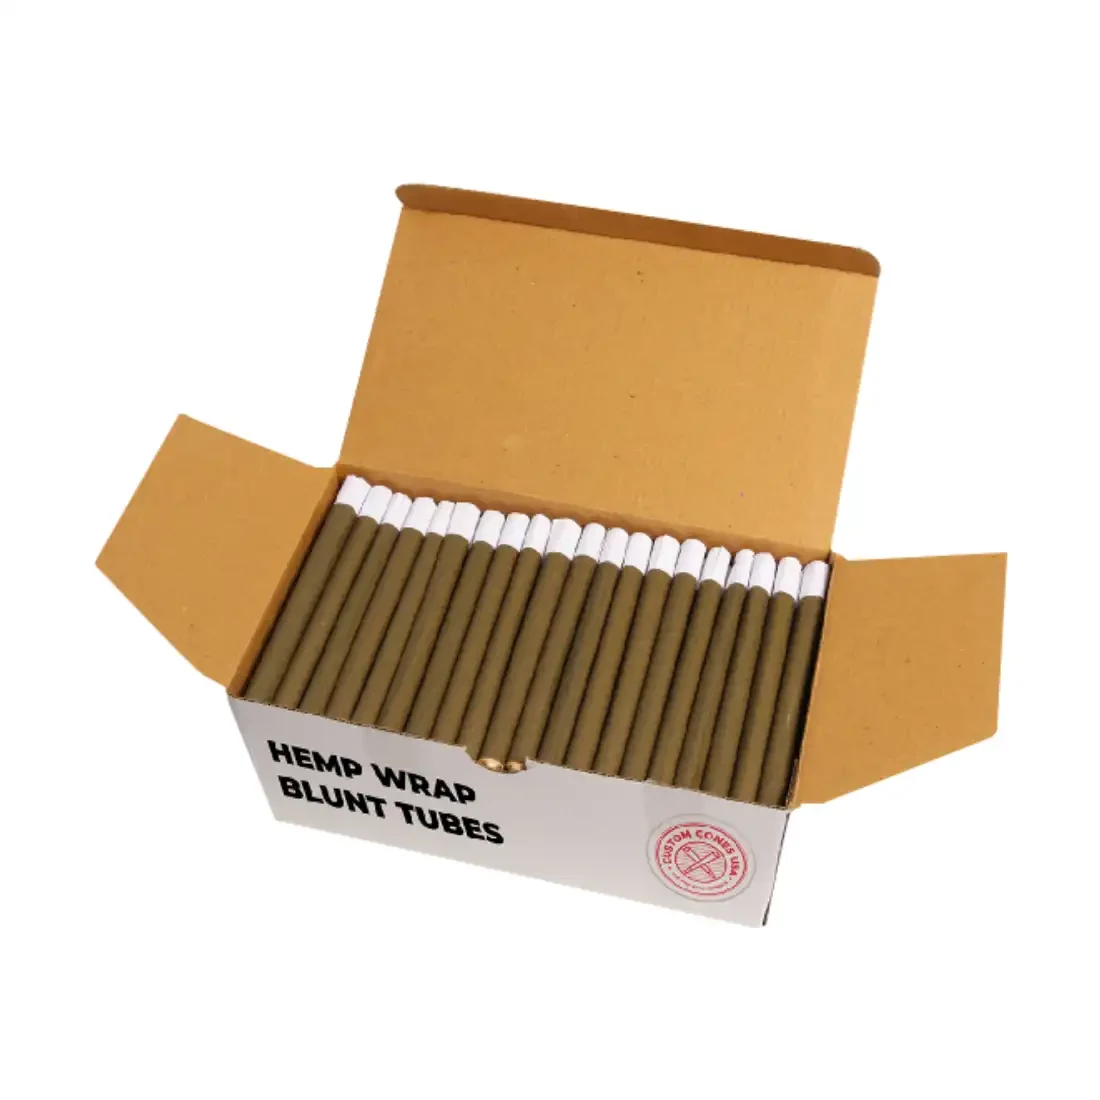 Custom Hemp Wraps Boxes